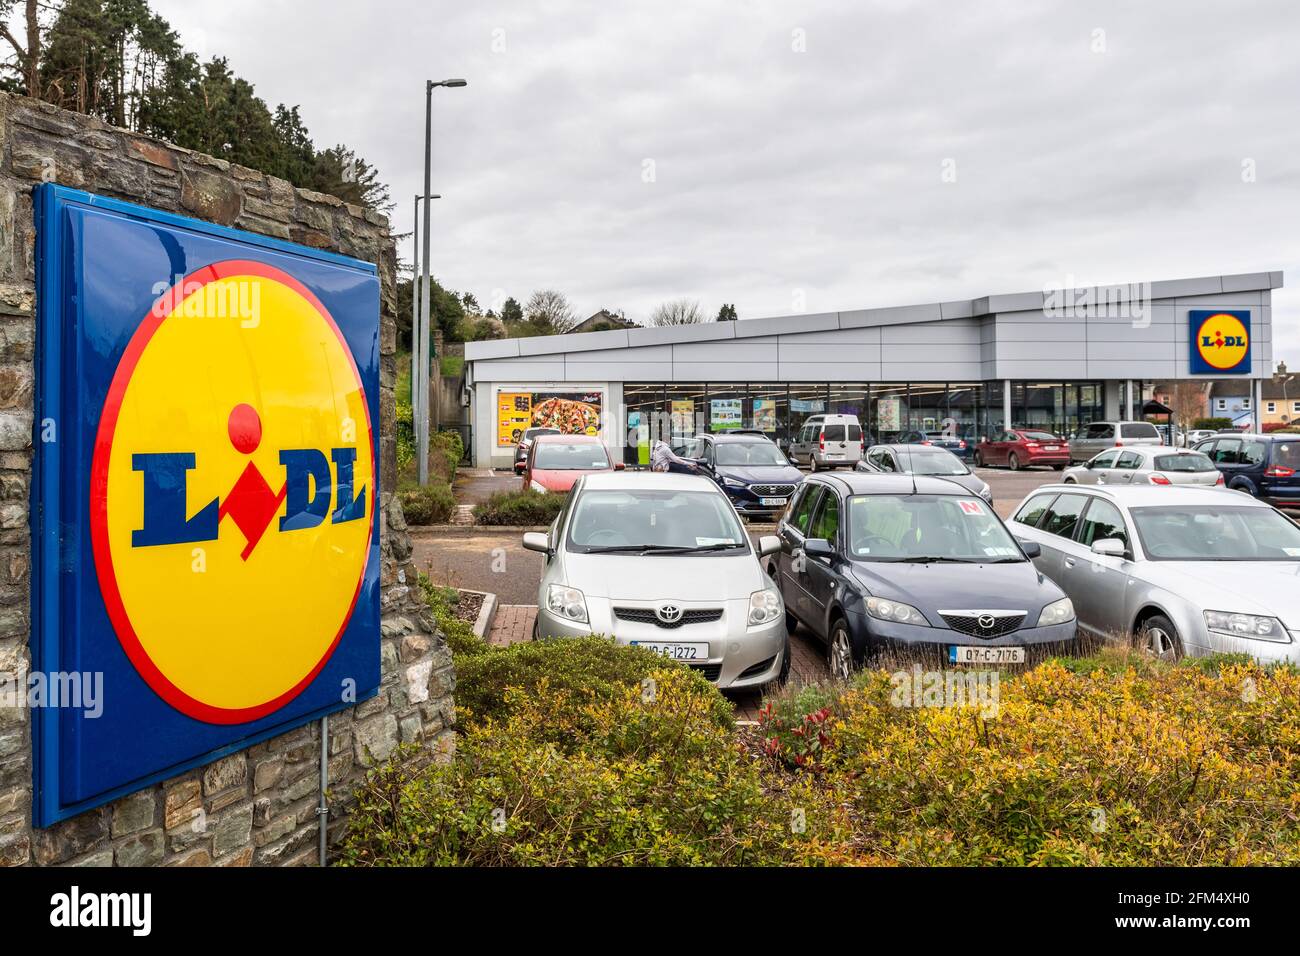 Lidl discount supermarket in Clonakilty, West Cork, Ireland. Stock Photo